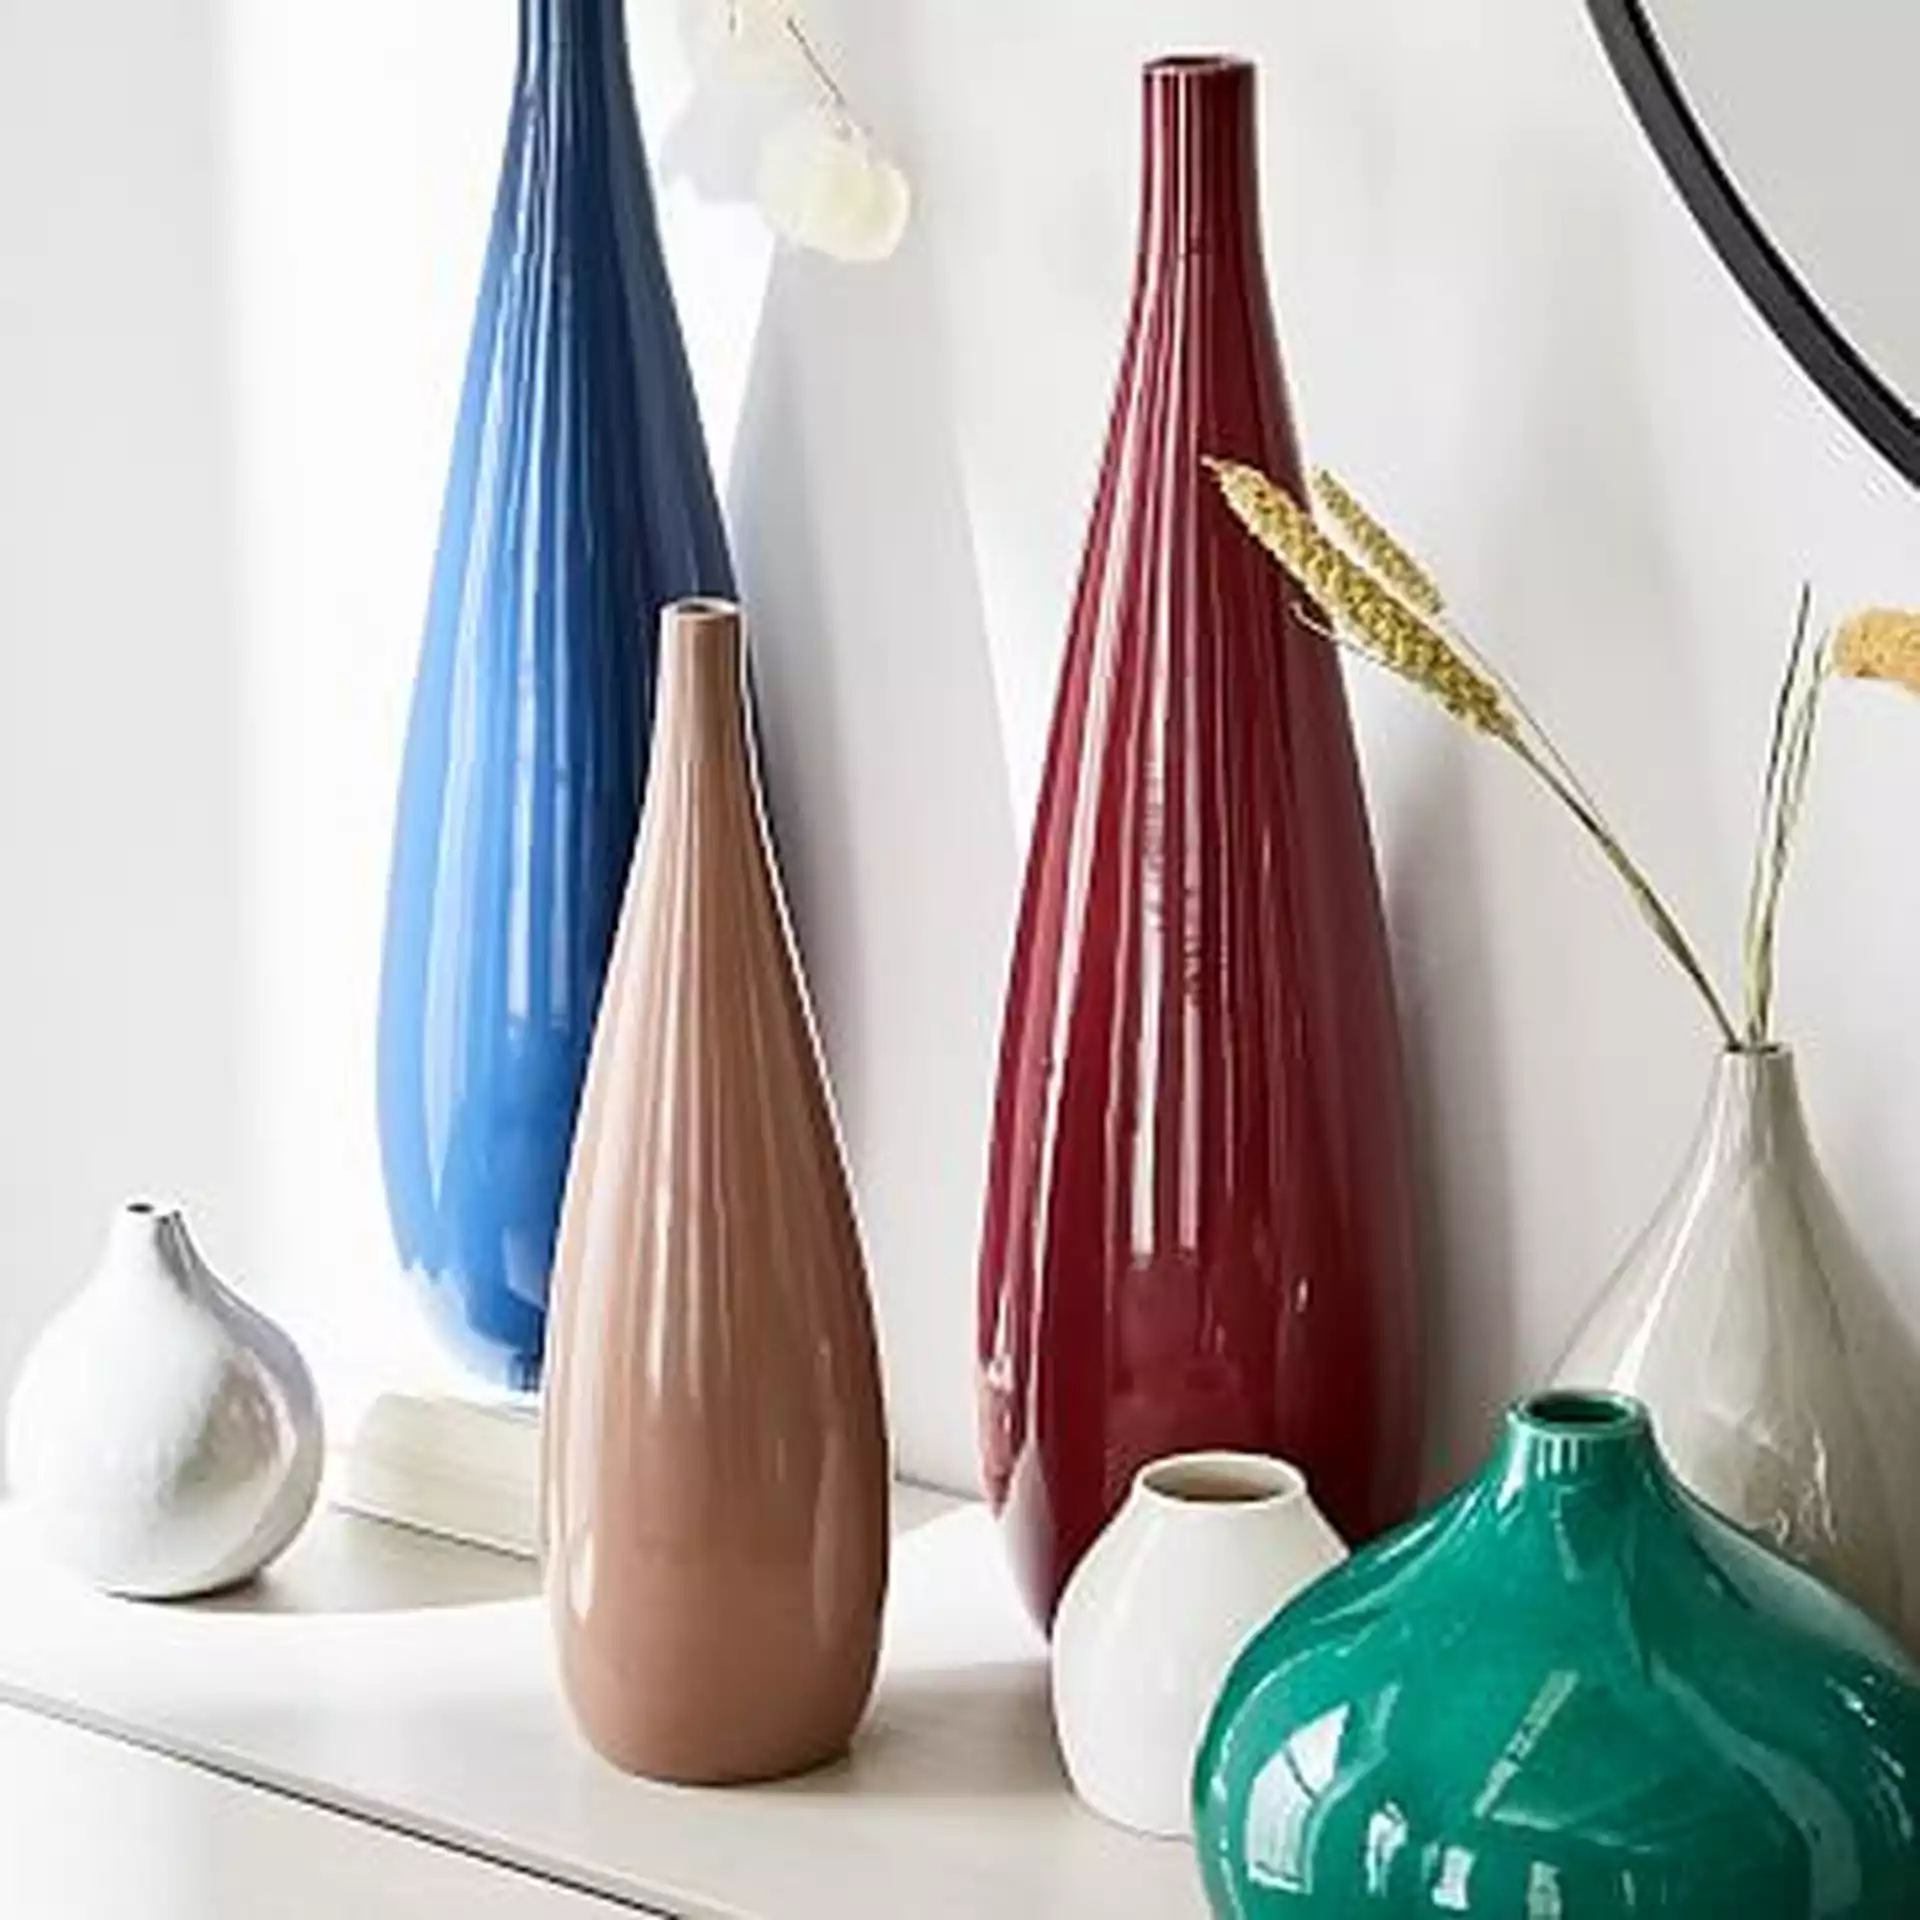 Bright Ceramicist Vase, Small Bud, Coral